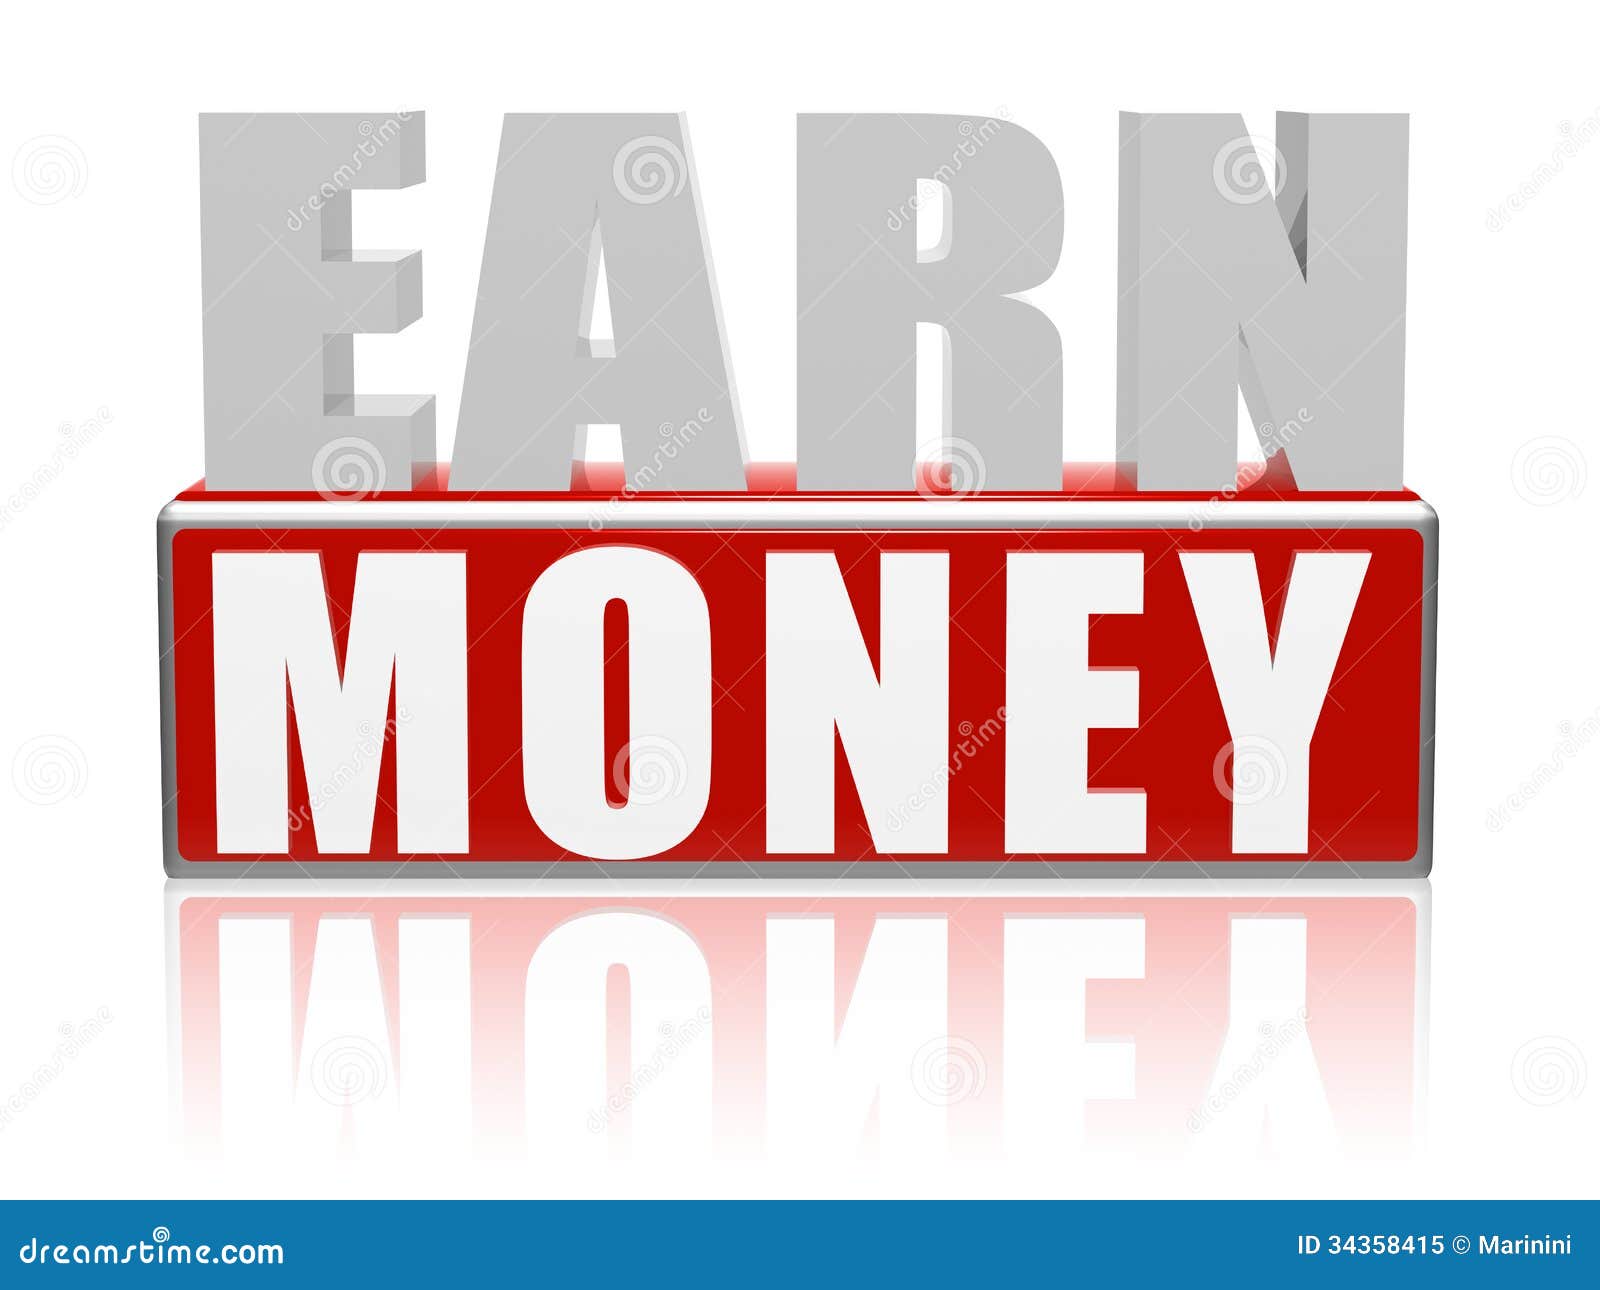 earn money banner advertising